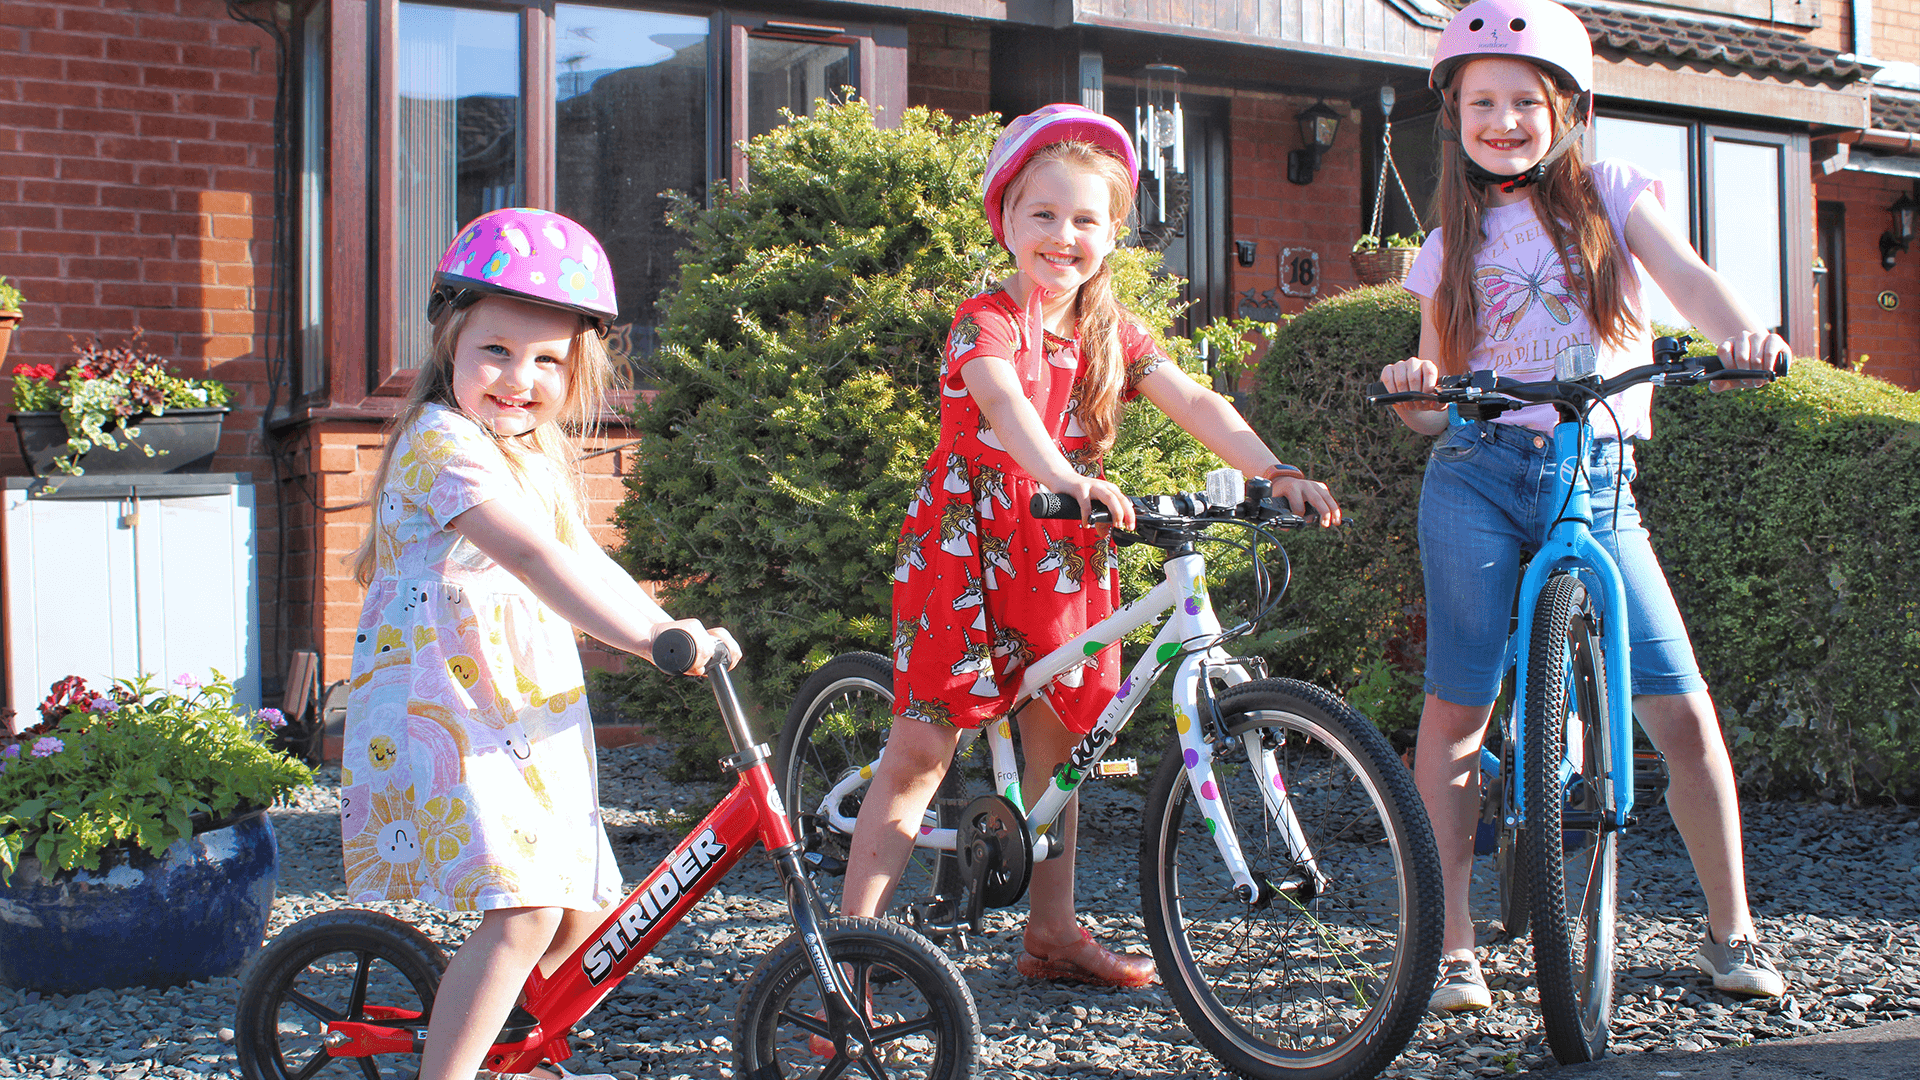 3 girls on bikes - bike club